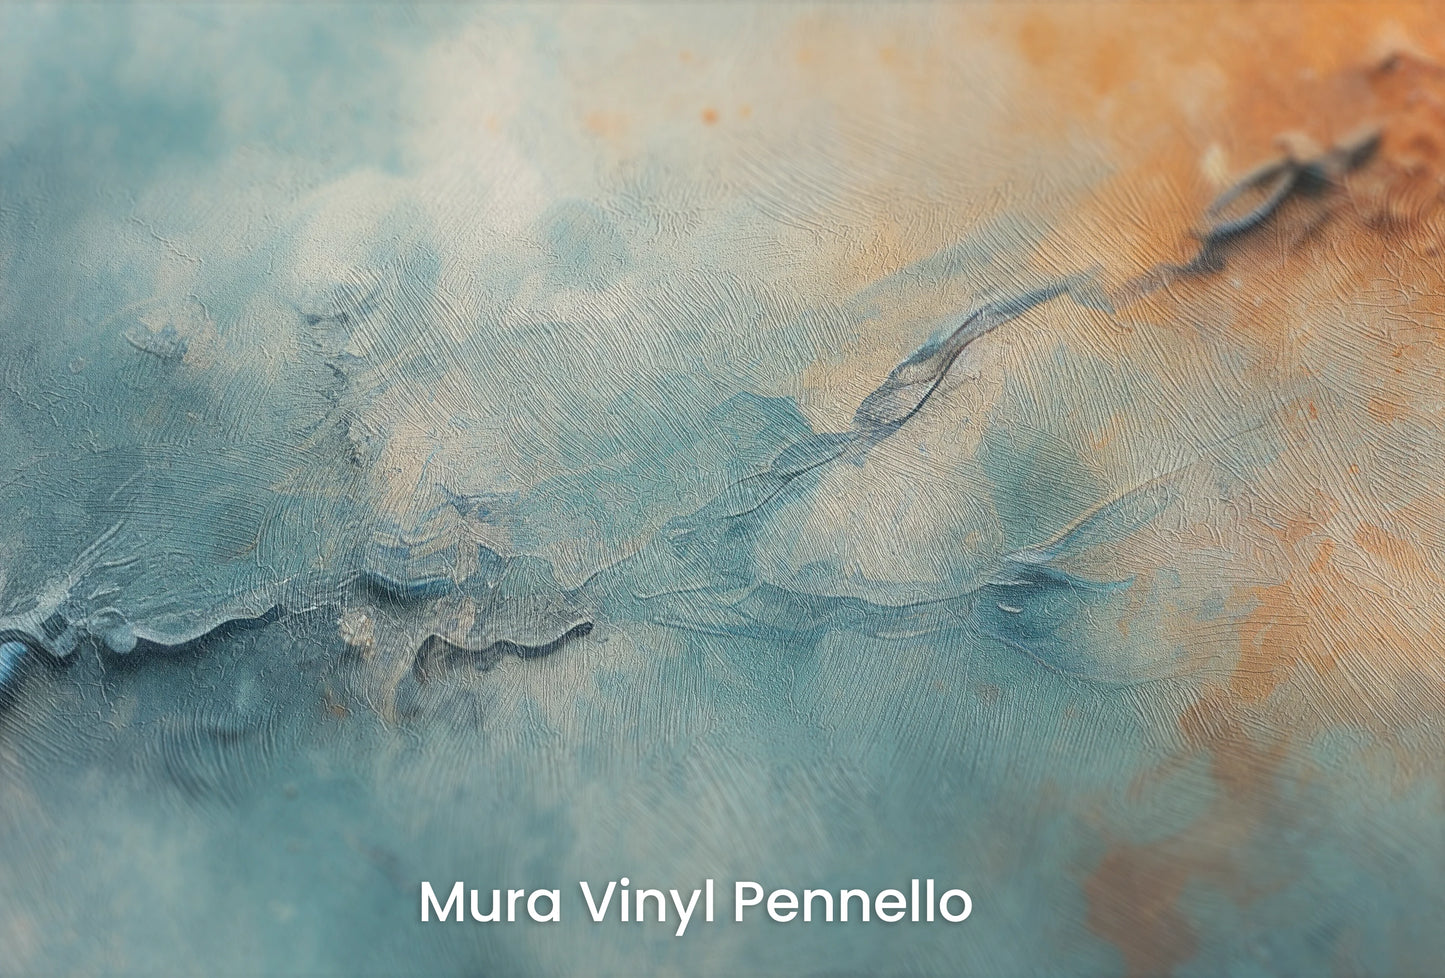 Zbliżenie na artystyczną fototapetę o nazwie Neptune's Mystery na podłożu Mura Vinyl Pennello - faktura pociągnięć pędzla malarskiego.